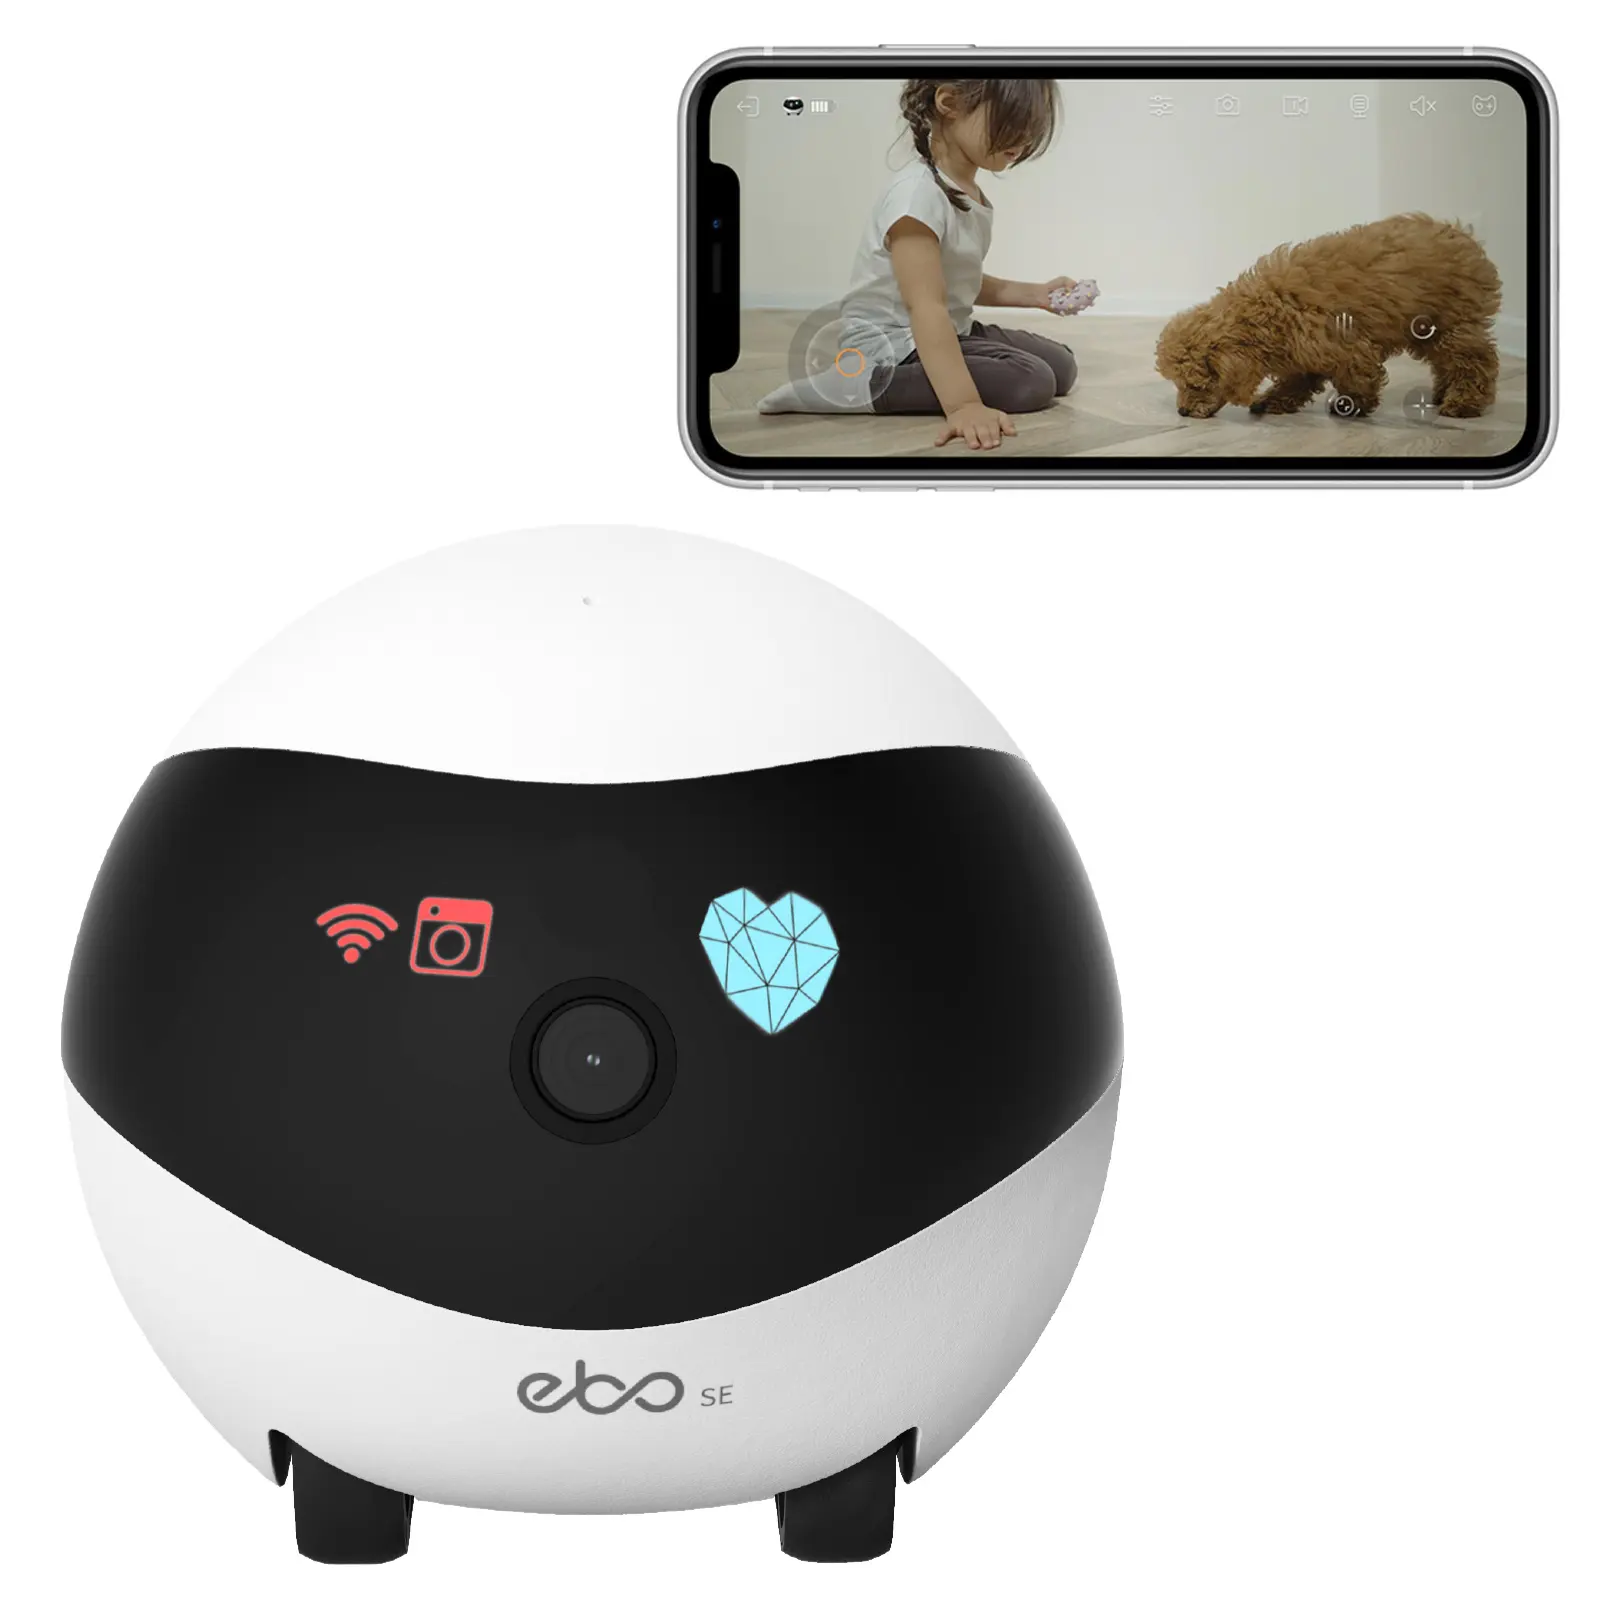 32G Smart App Control Ebo SE Pet Companion Robot Cámara Electron Interactive Robotic Toys para Cat Children The Aged